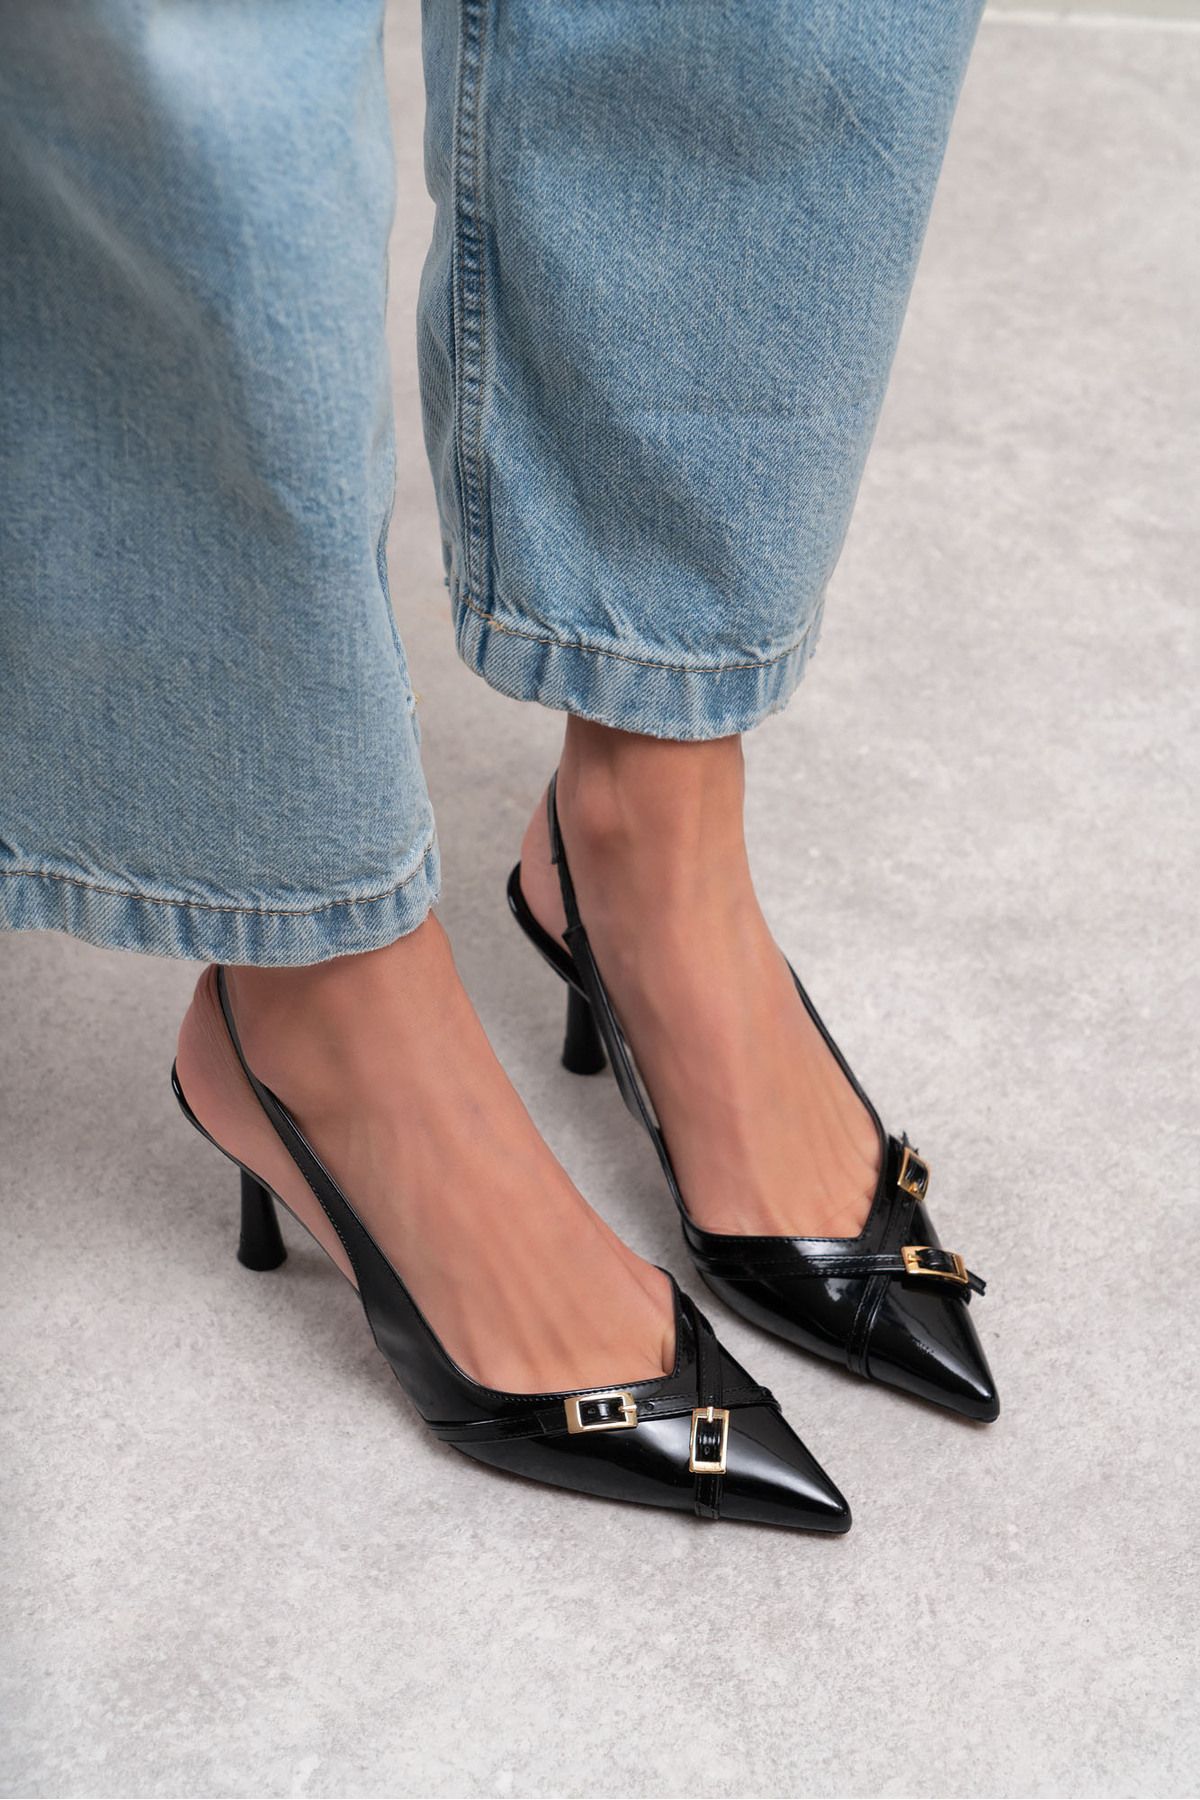 NİŞANTAŞI SHOES Platte Siyah Rugan Kemer Detay Bilek Bağlı Kadın Topuklu Ayakkabı